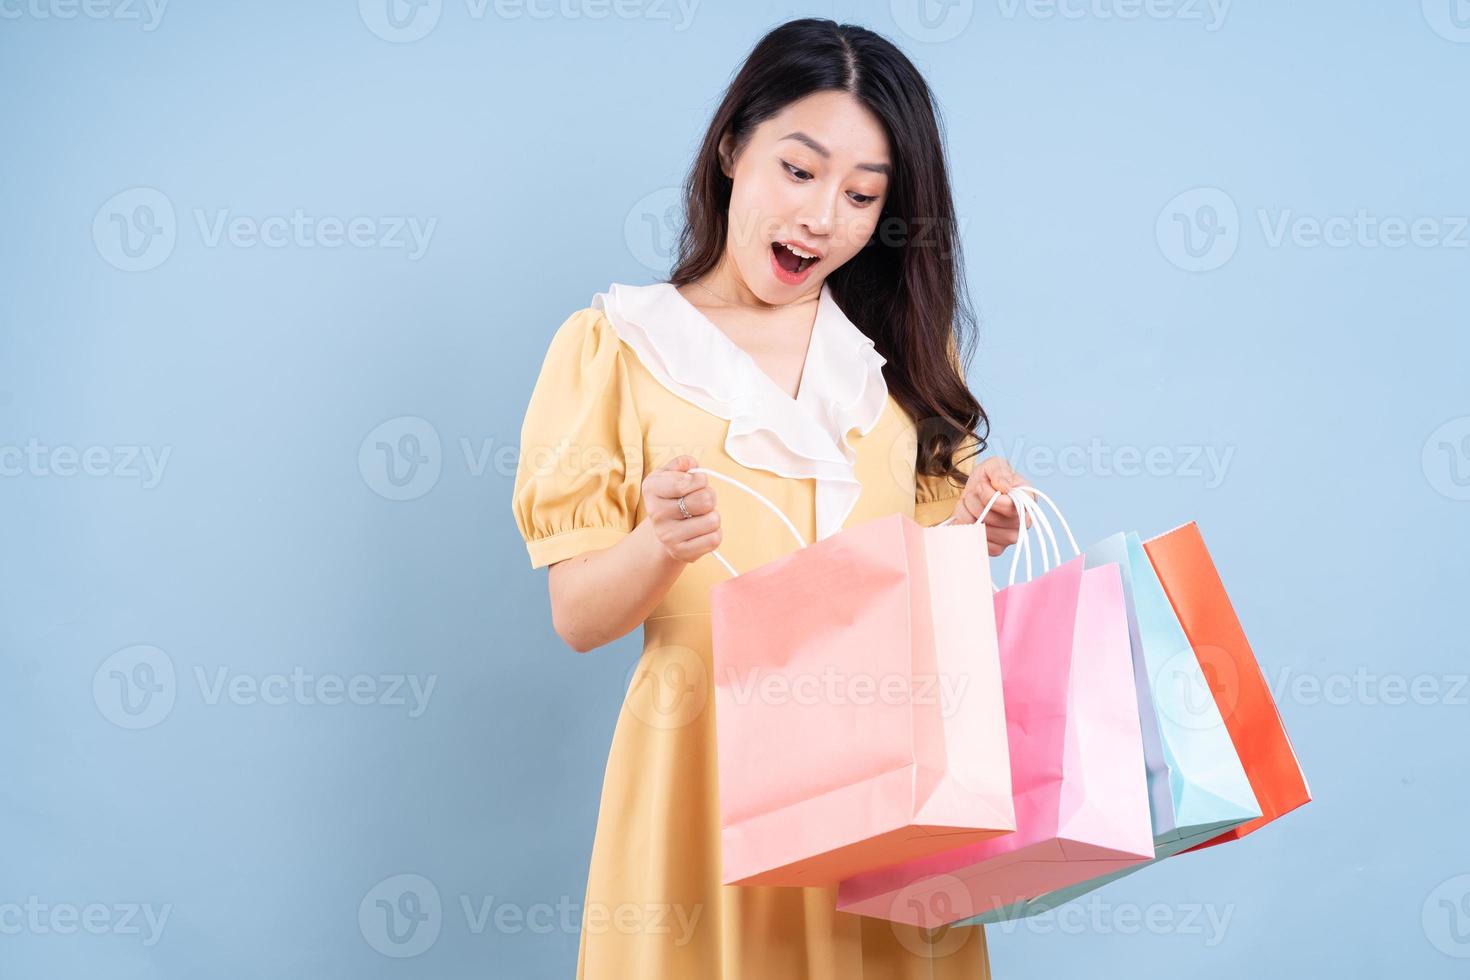 Hermosa joven asiática sosteniendo una bolsa de compras sobre fondo azul. foto